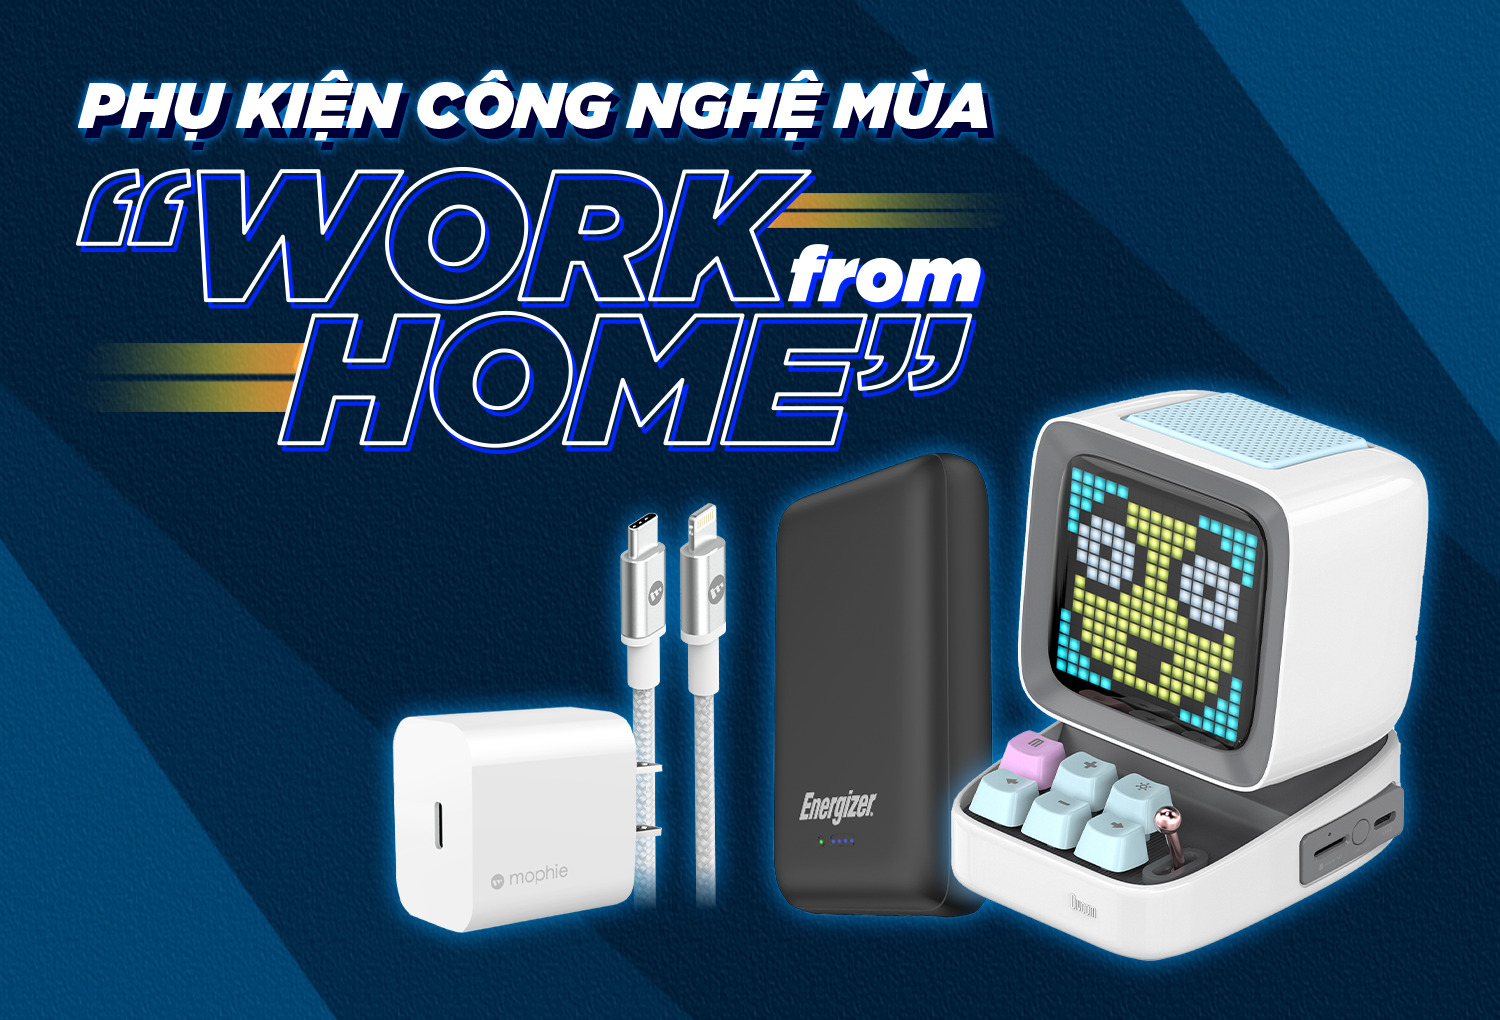 Bộ 3 phụ kiện công nghệ được GenZ săn đón trong thời gian "work from home"